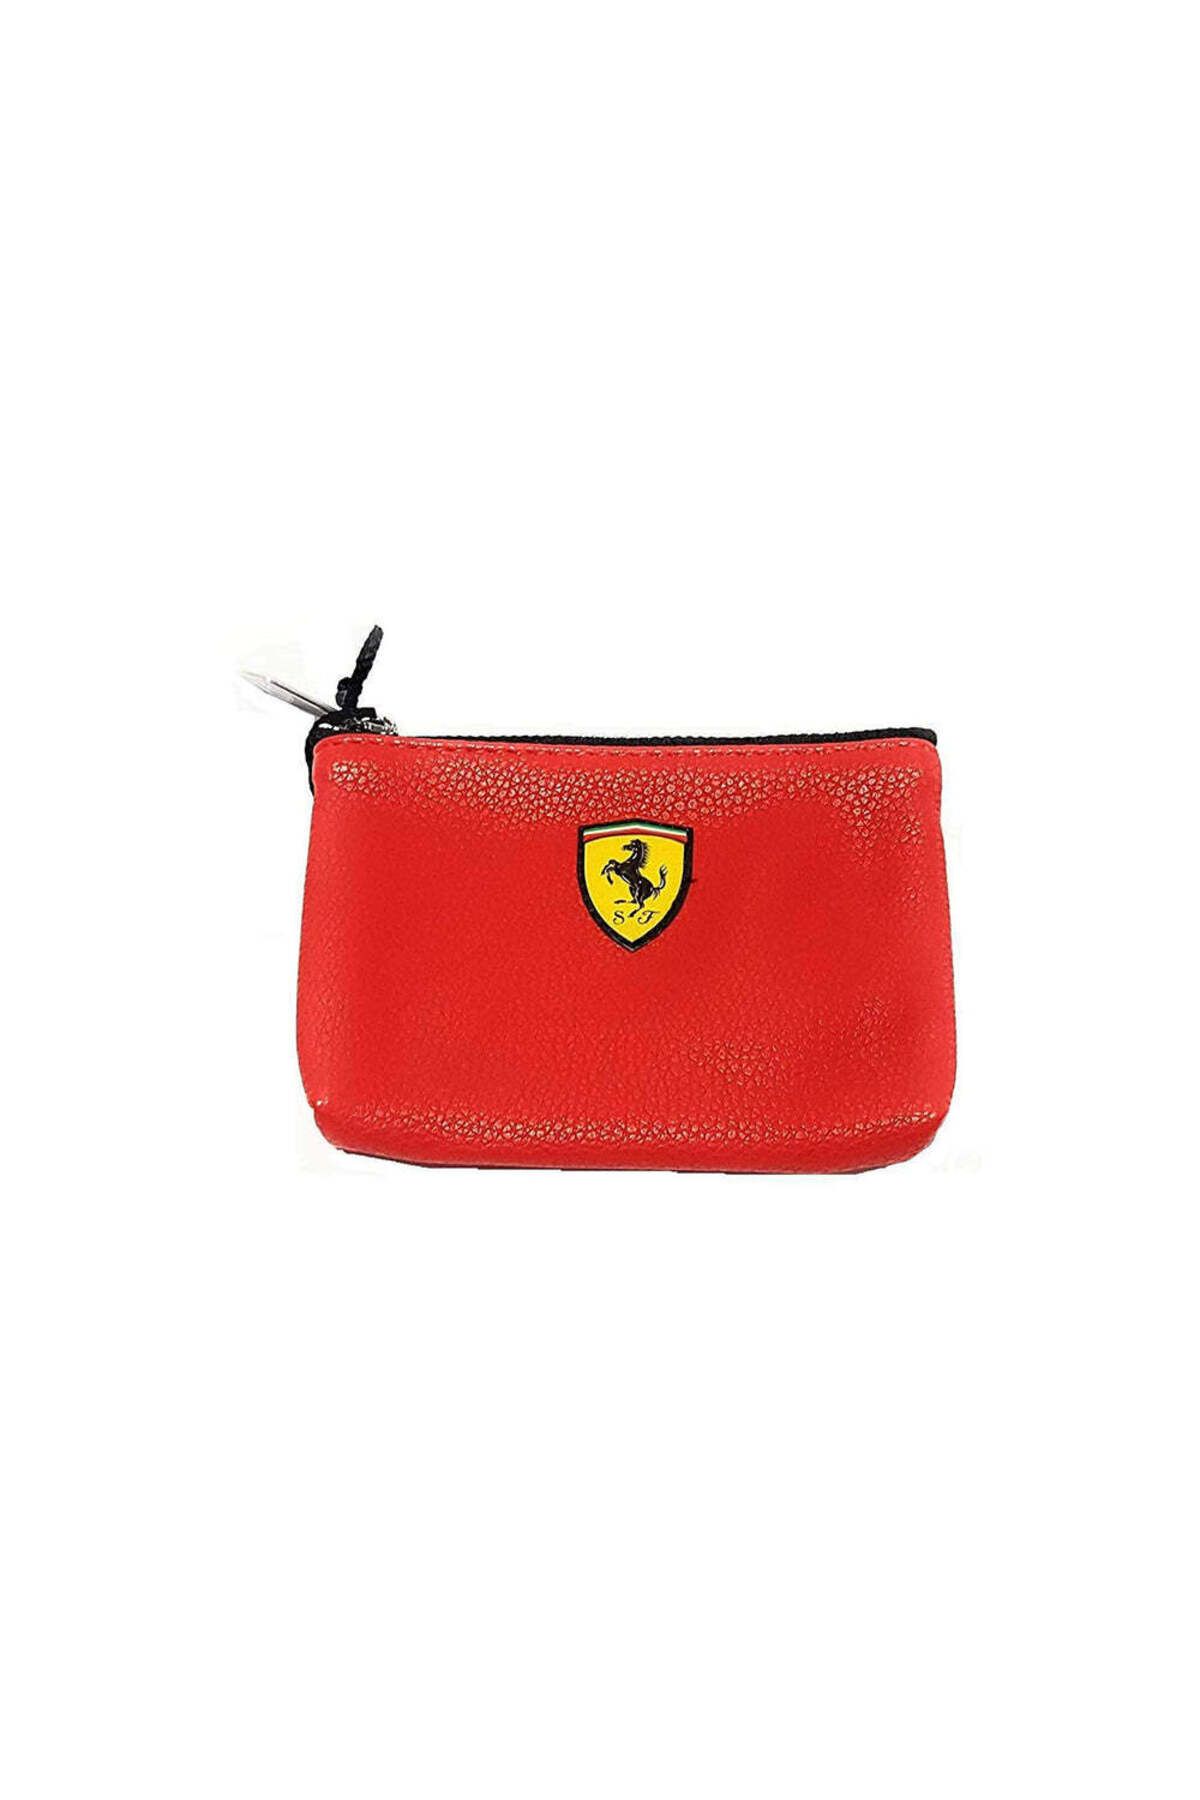 Ferrari Deri Bozuk Para Cüzdanı Scuderia Kırmızı